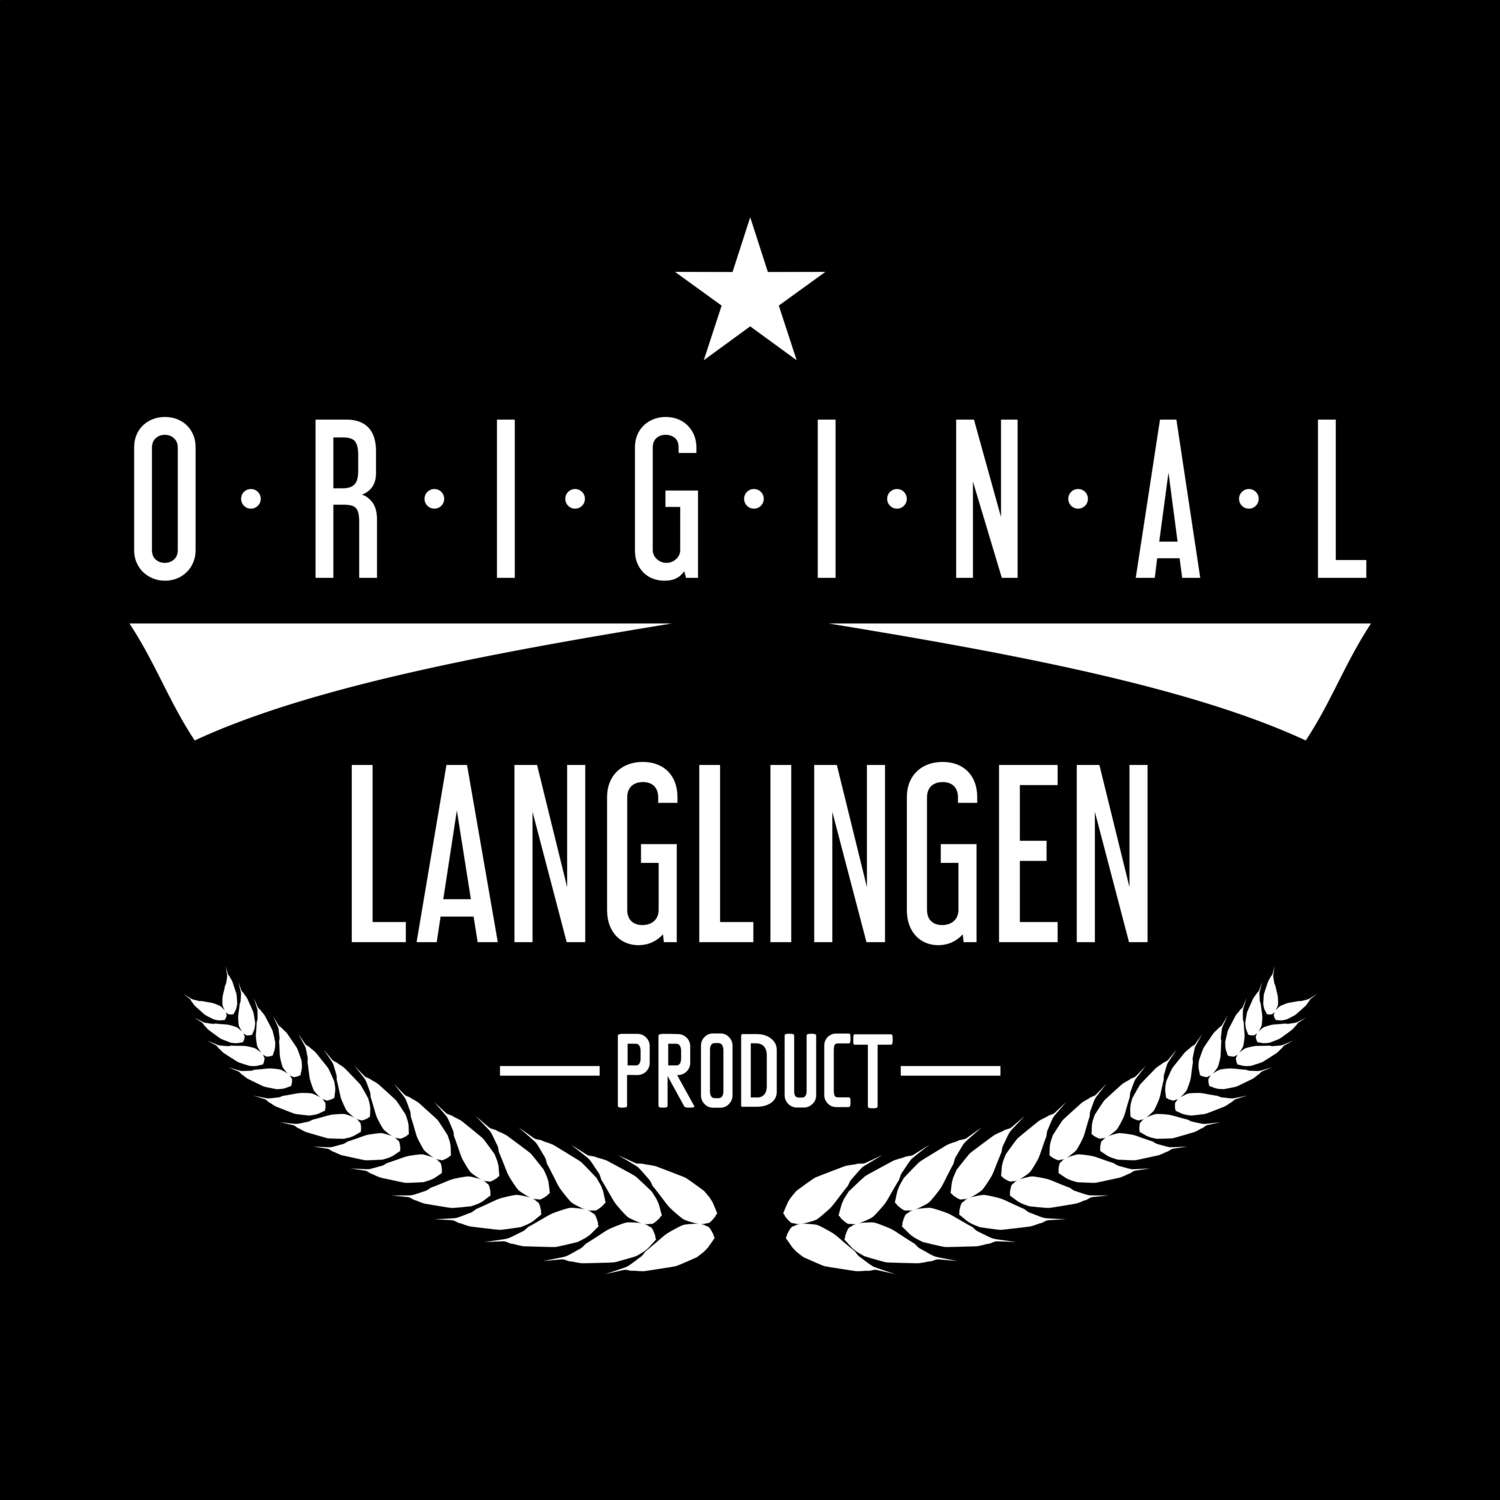 Langlingen T-Shirt »Original Product«